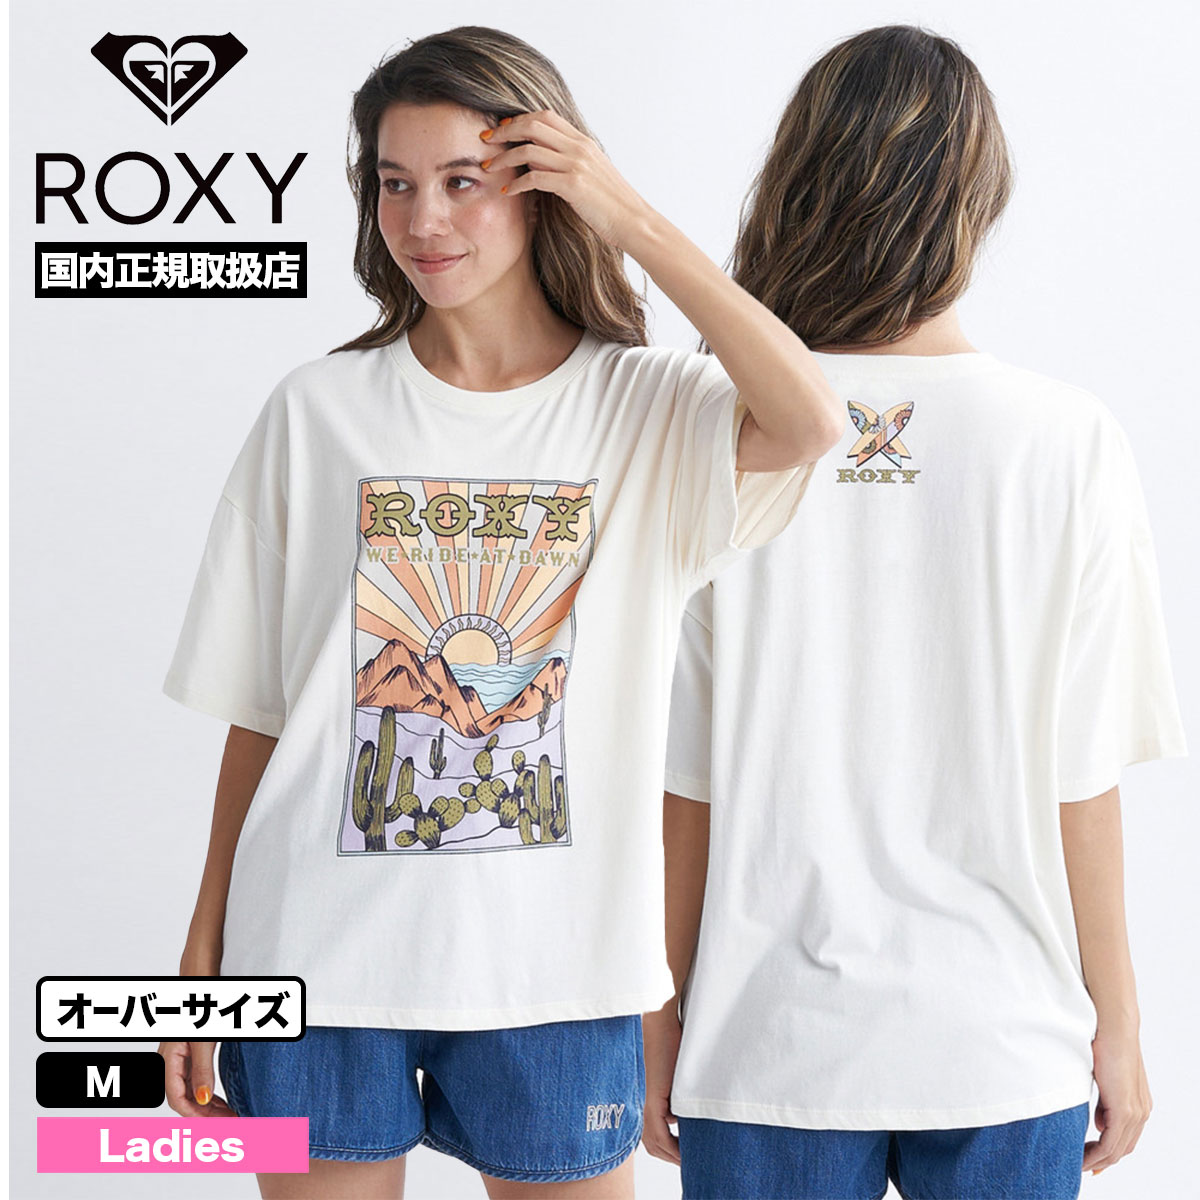 ROXY ロキシー レディース Tシャツ 半袖 オーバーサイズ 大きめ ゆったりホワイト ブラック ...